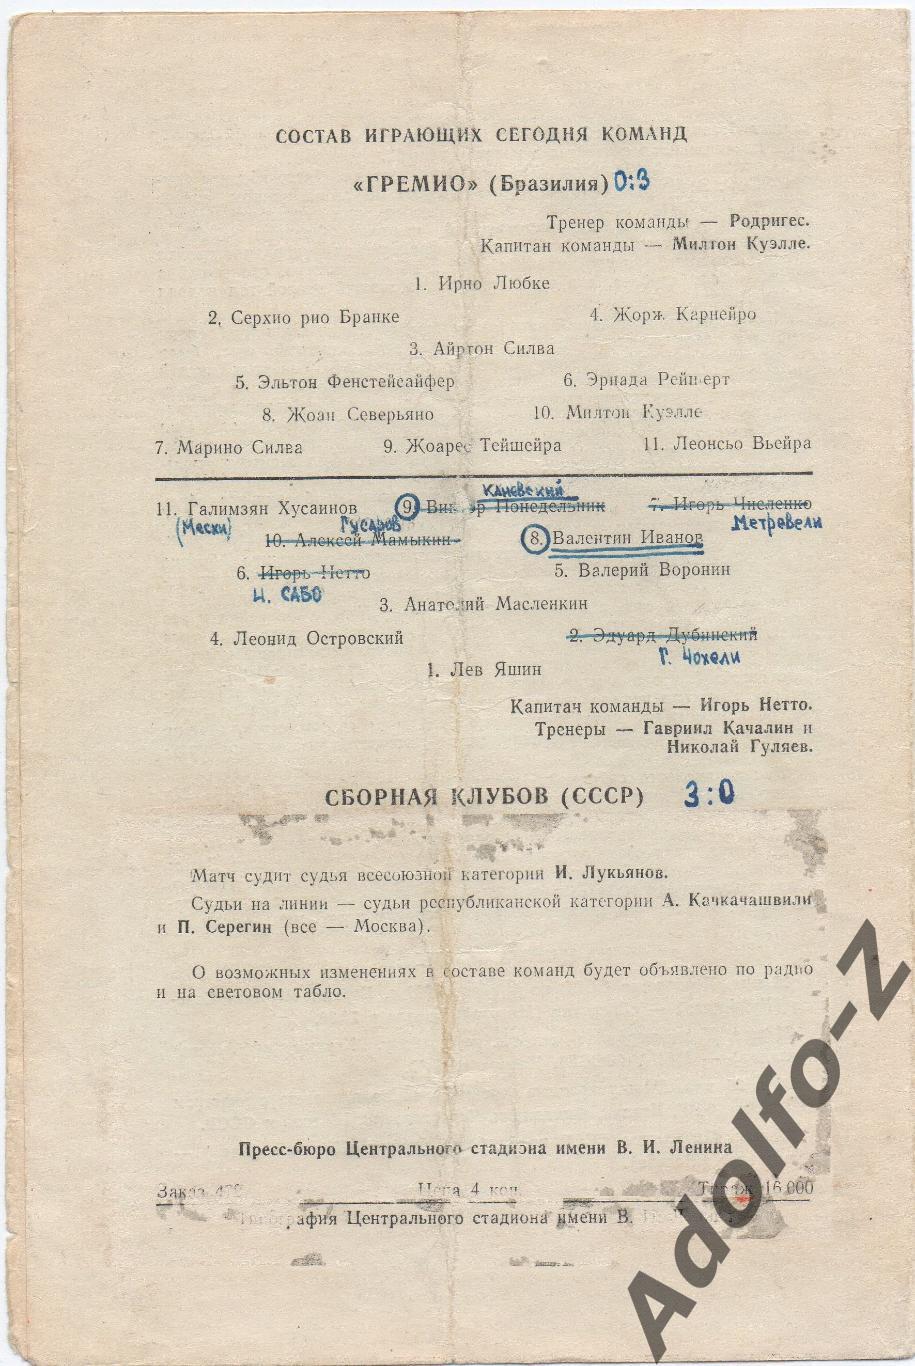 1962. Сборная клубов СССР – Гремио (Бразилия). МТМ 1